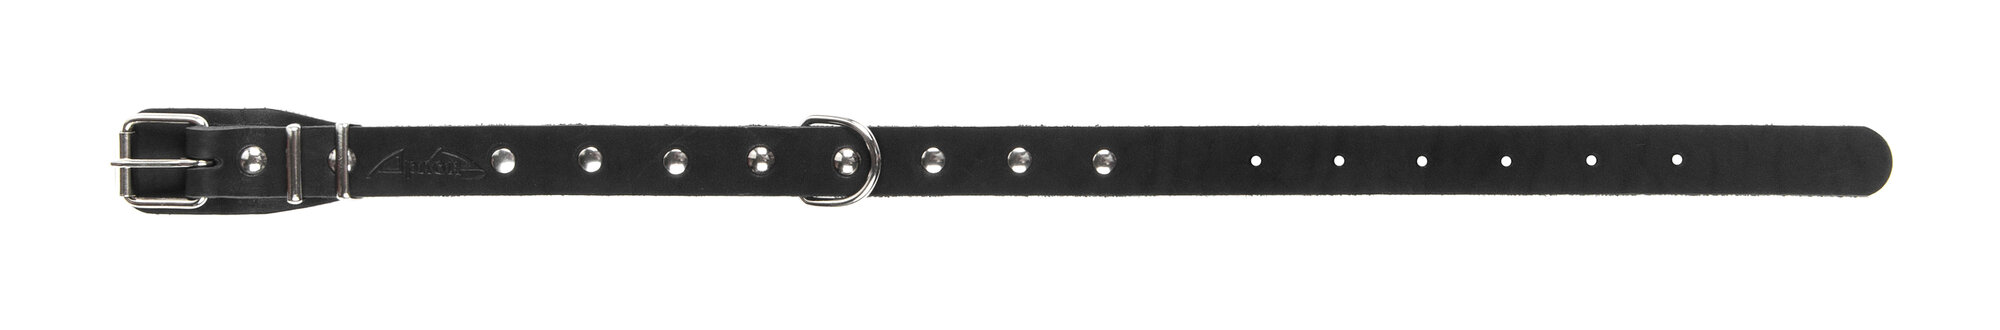 Ошейник аркон кожаный для собак однослойный, украшения, черный (32-44 см/20 мм)